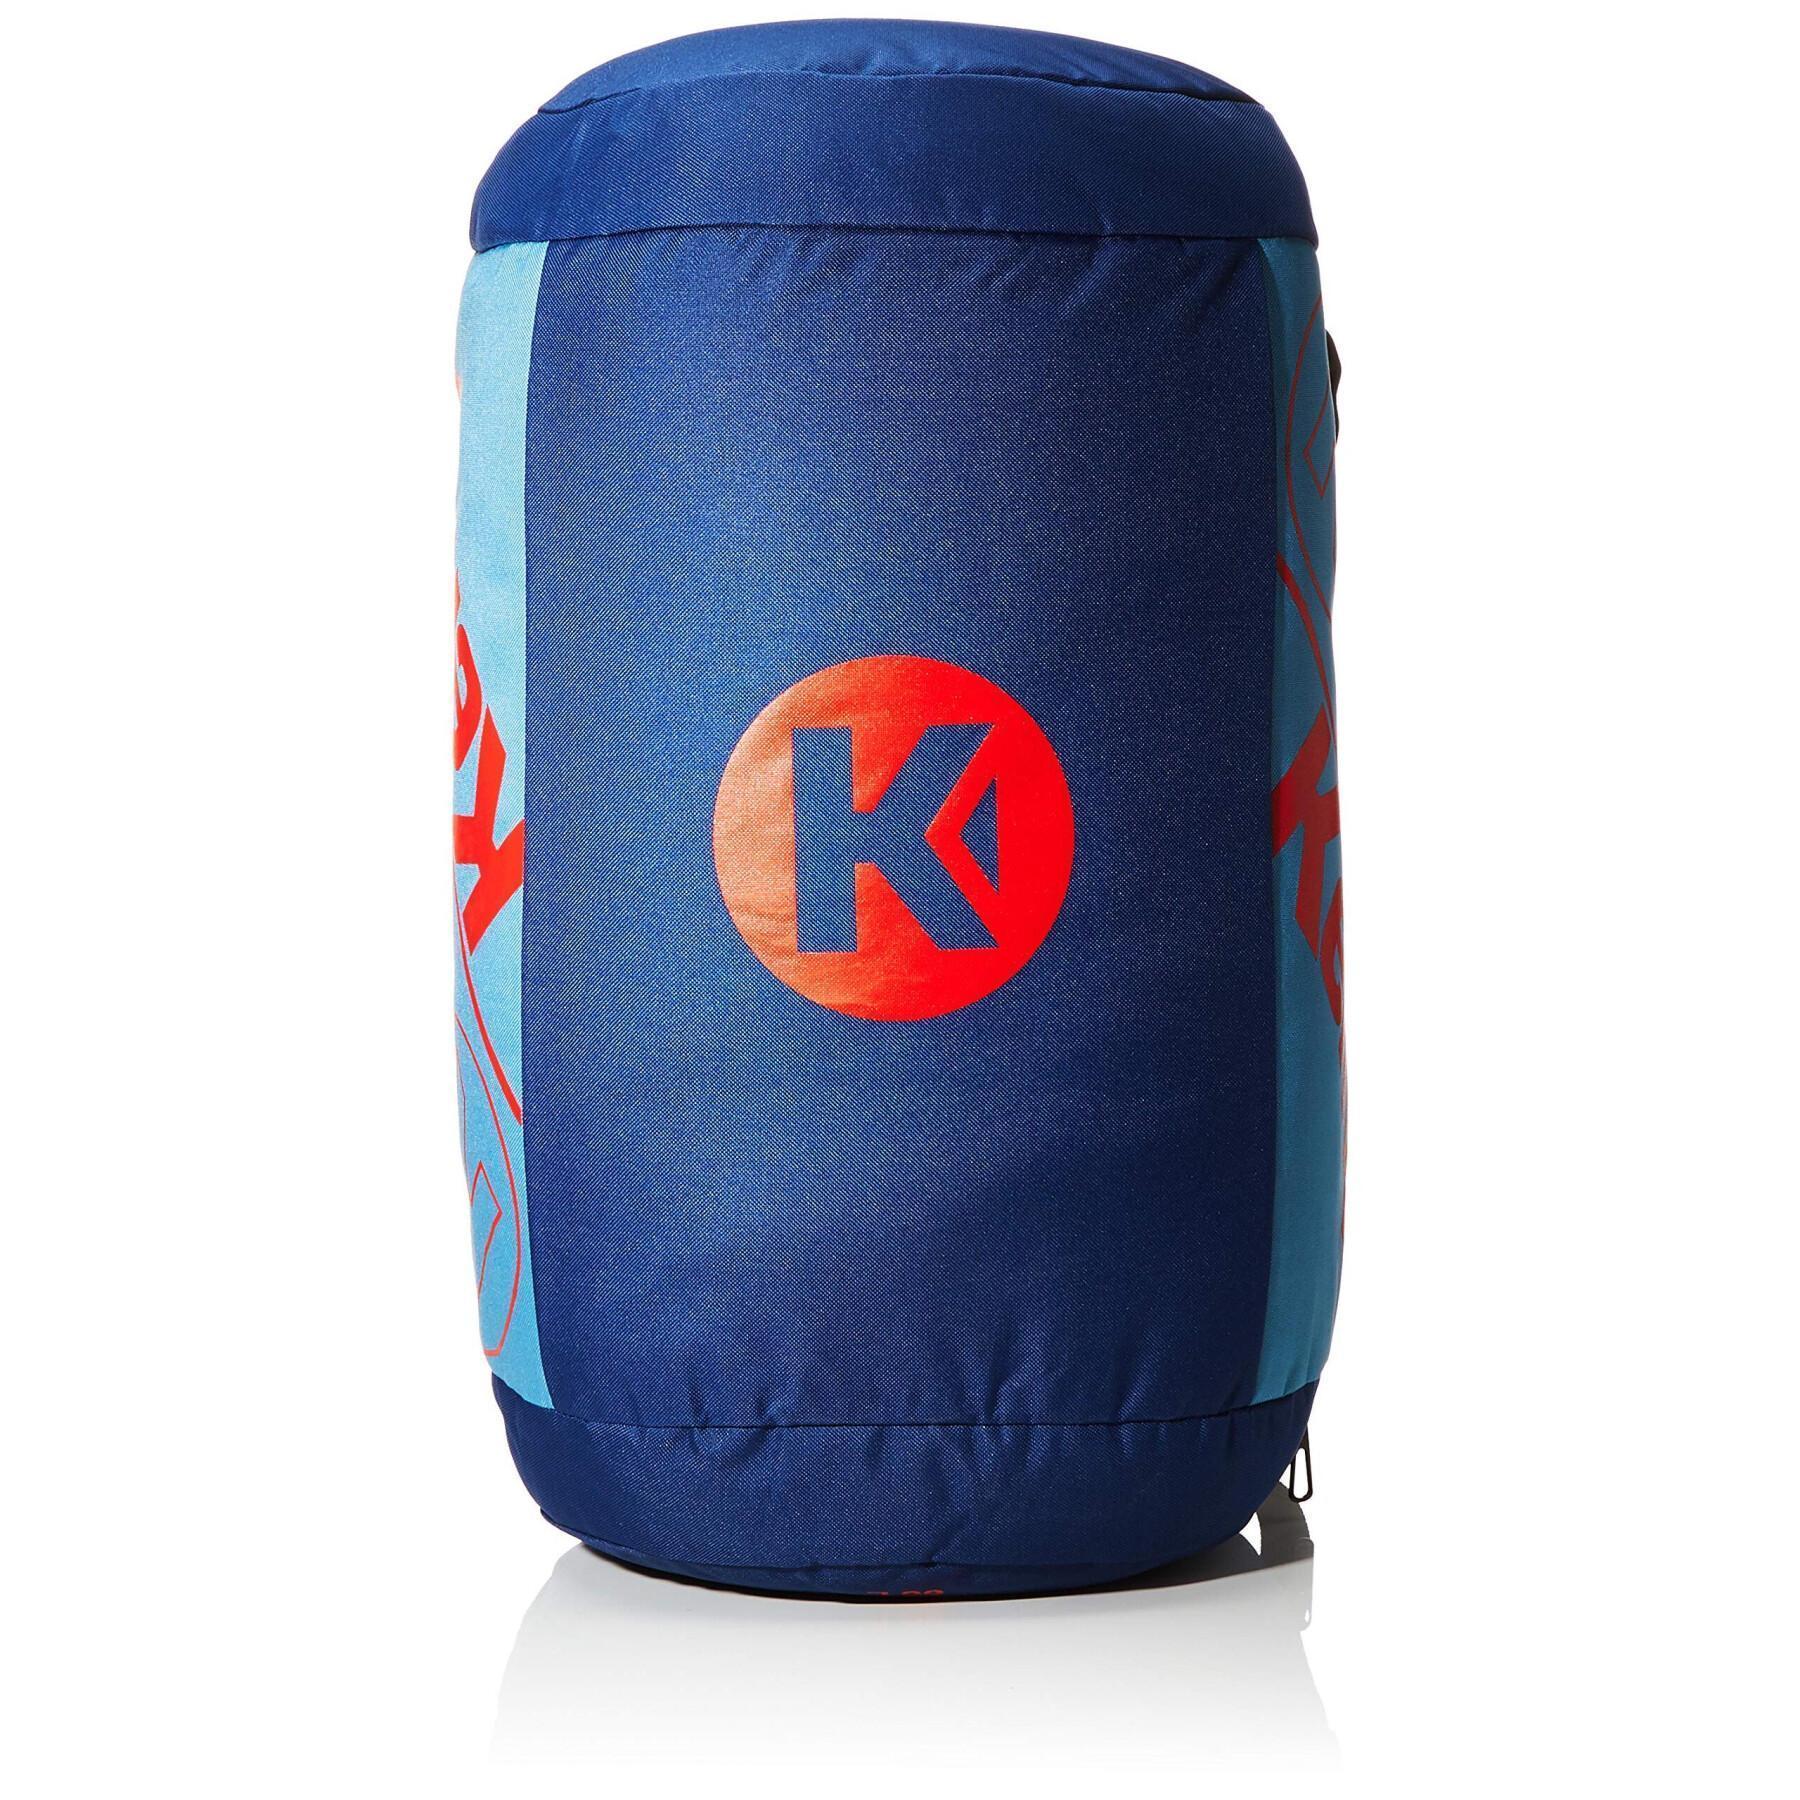 Sports bag 60l Kempa K-Line Pro Ebbe & Flut